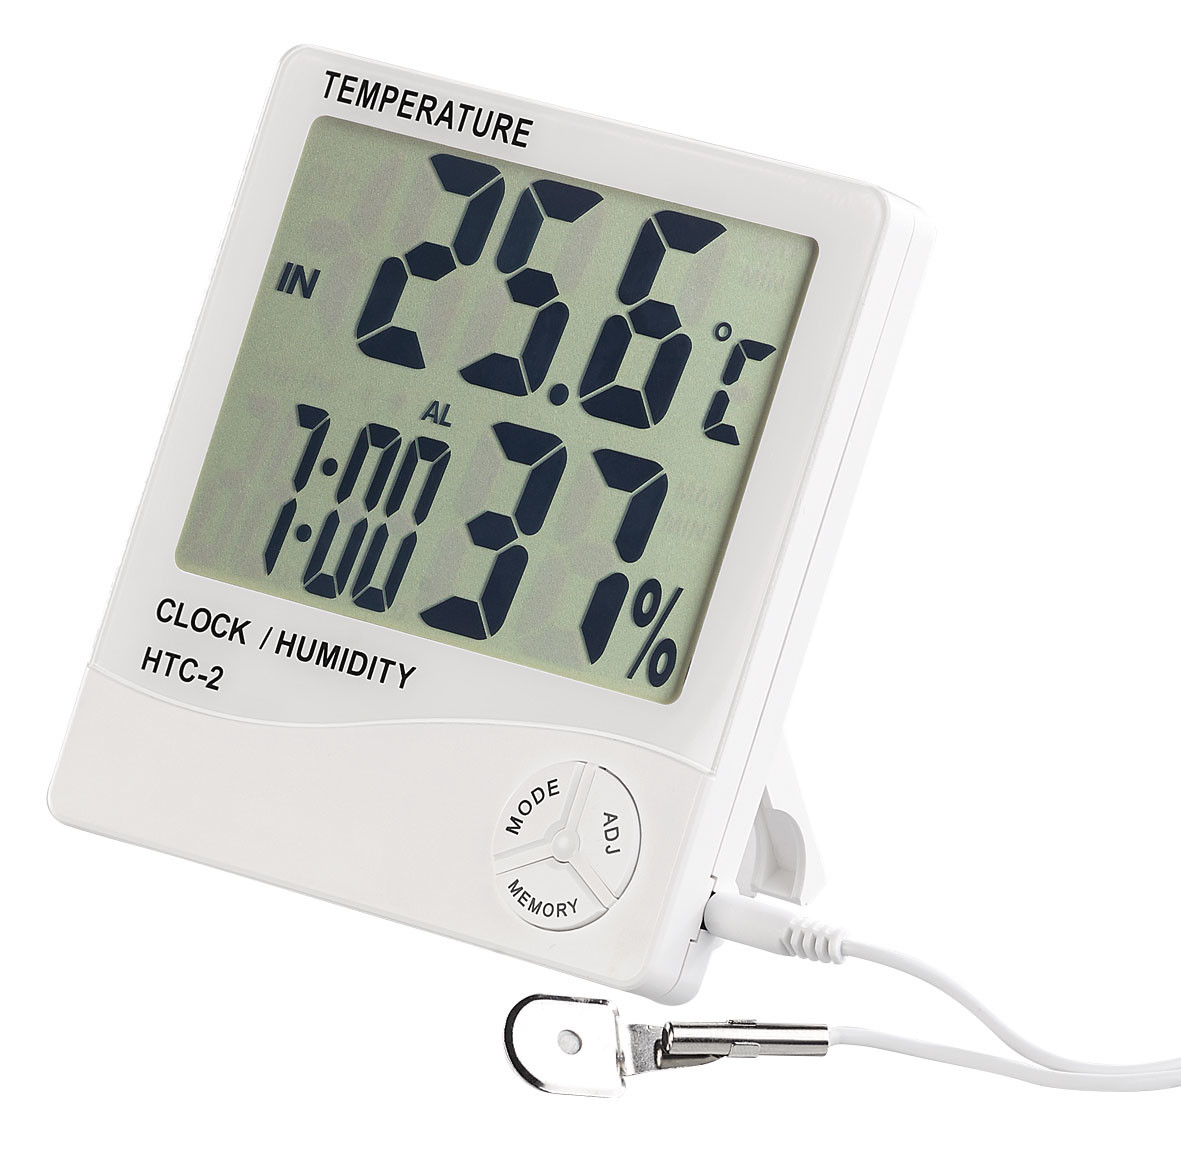 Thermomètre et Hygromètre digital avec sonde extérieure à petit Prix, Thermomètres / Baromètres